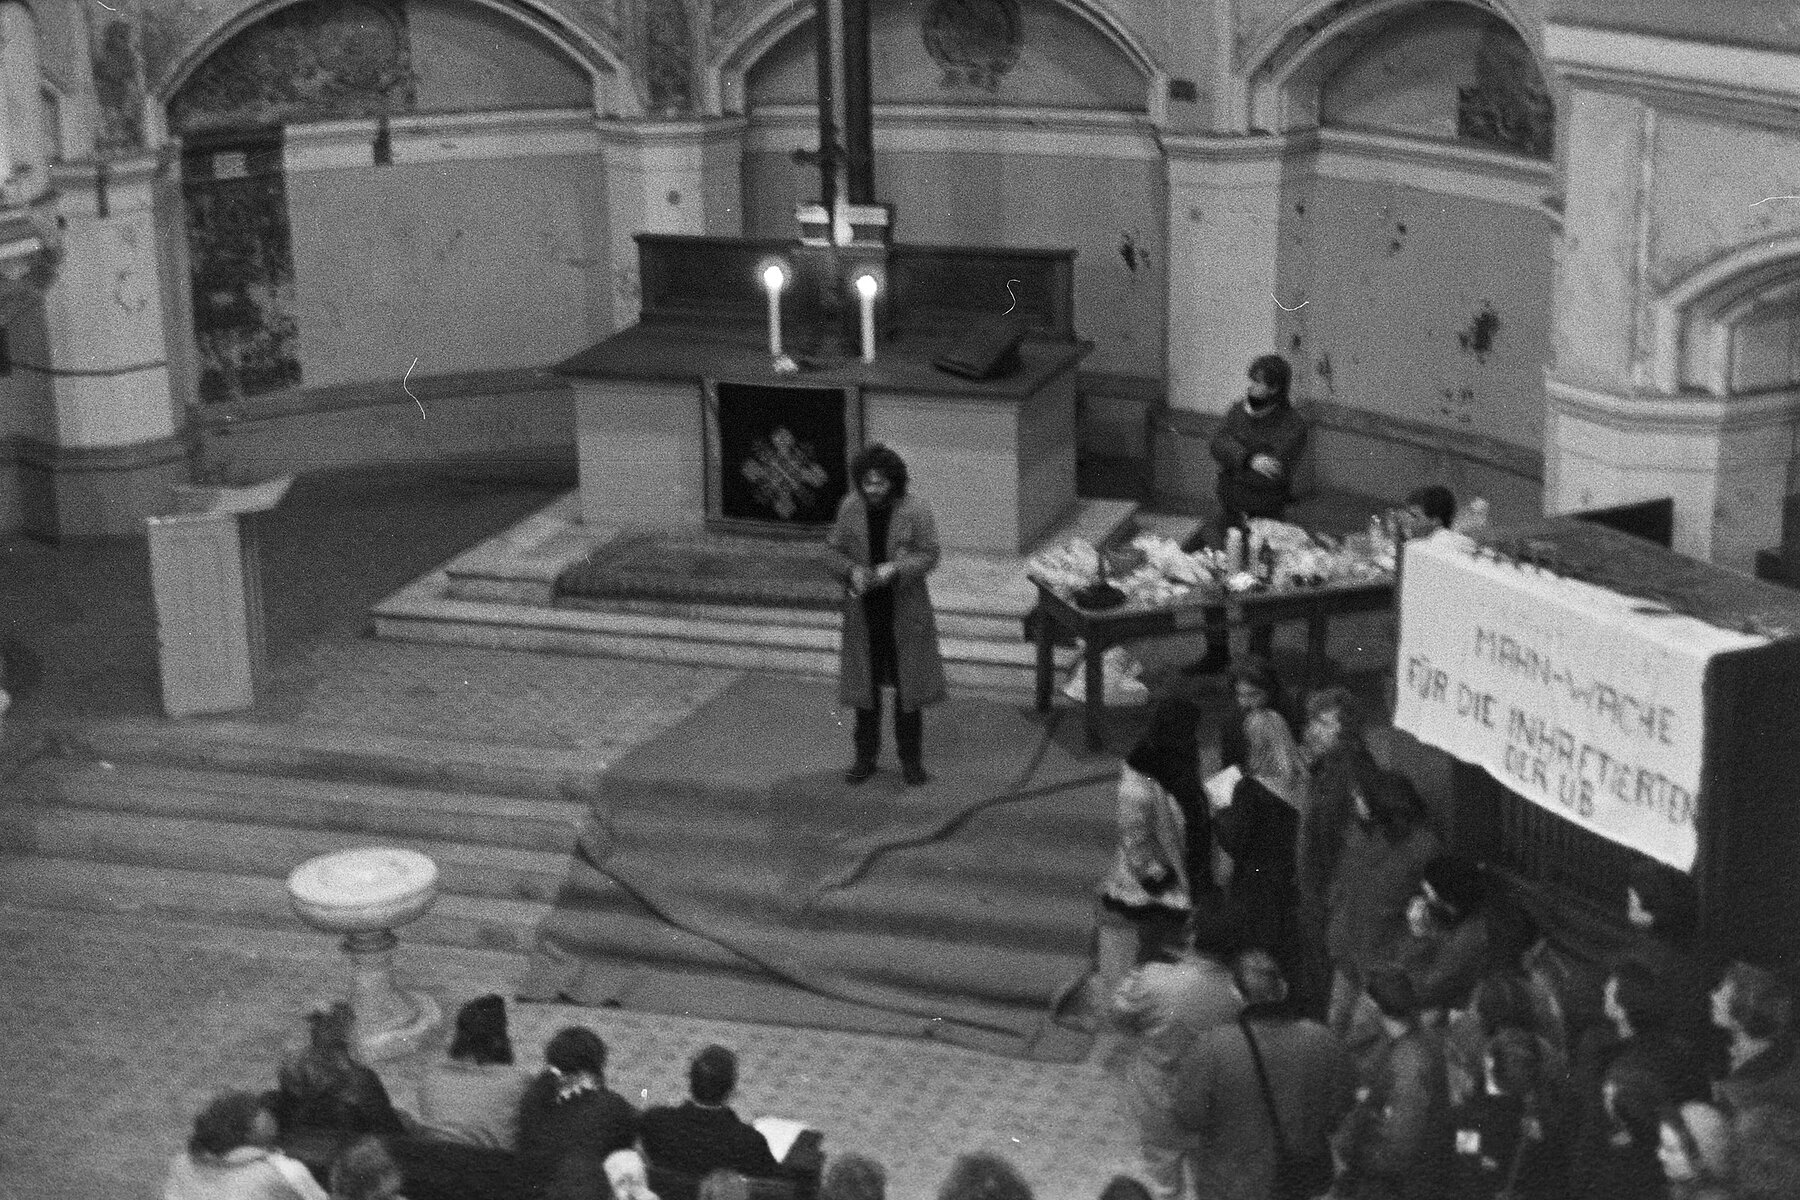 Mitglieder der Umweltbibliothek halten eine Mahnwache in der Zionskirche ab. Eine Person spricht vom Altar aus zu ihnen.